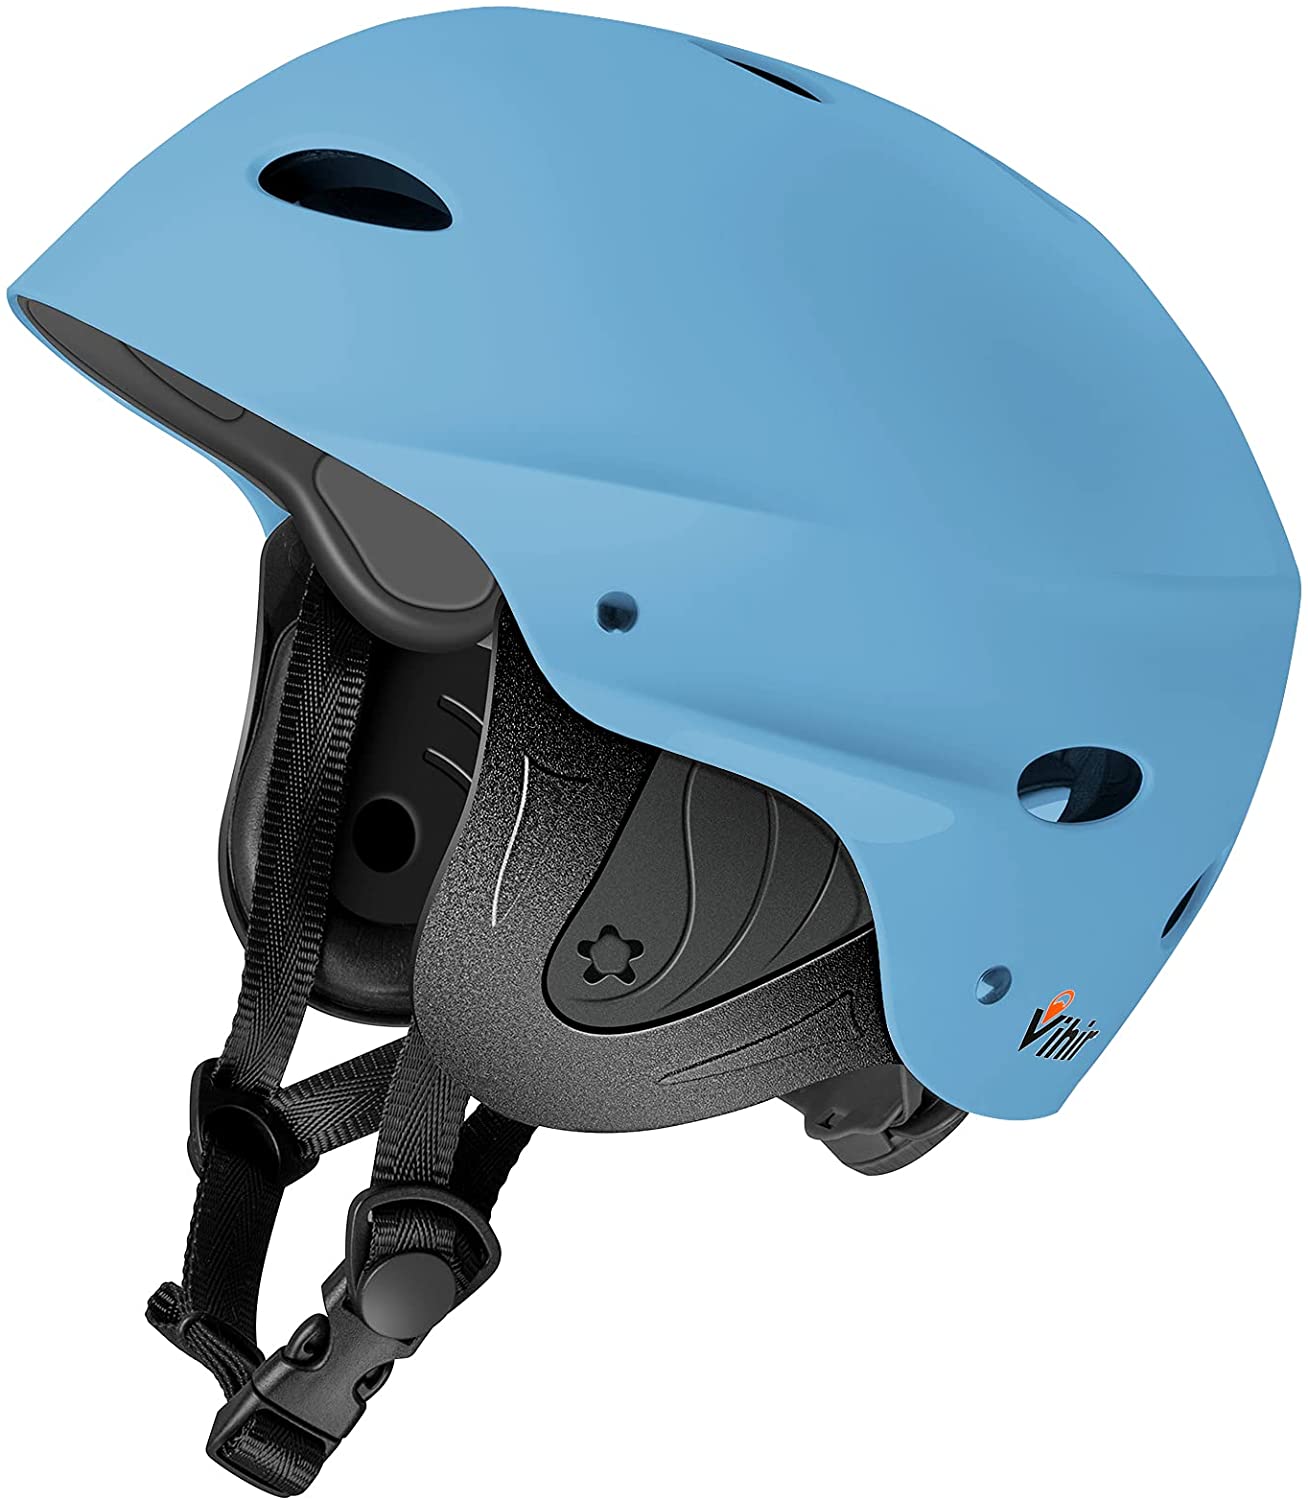 Vihir-Adult-Water-Sports-Helmet-with-Ears